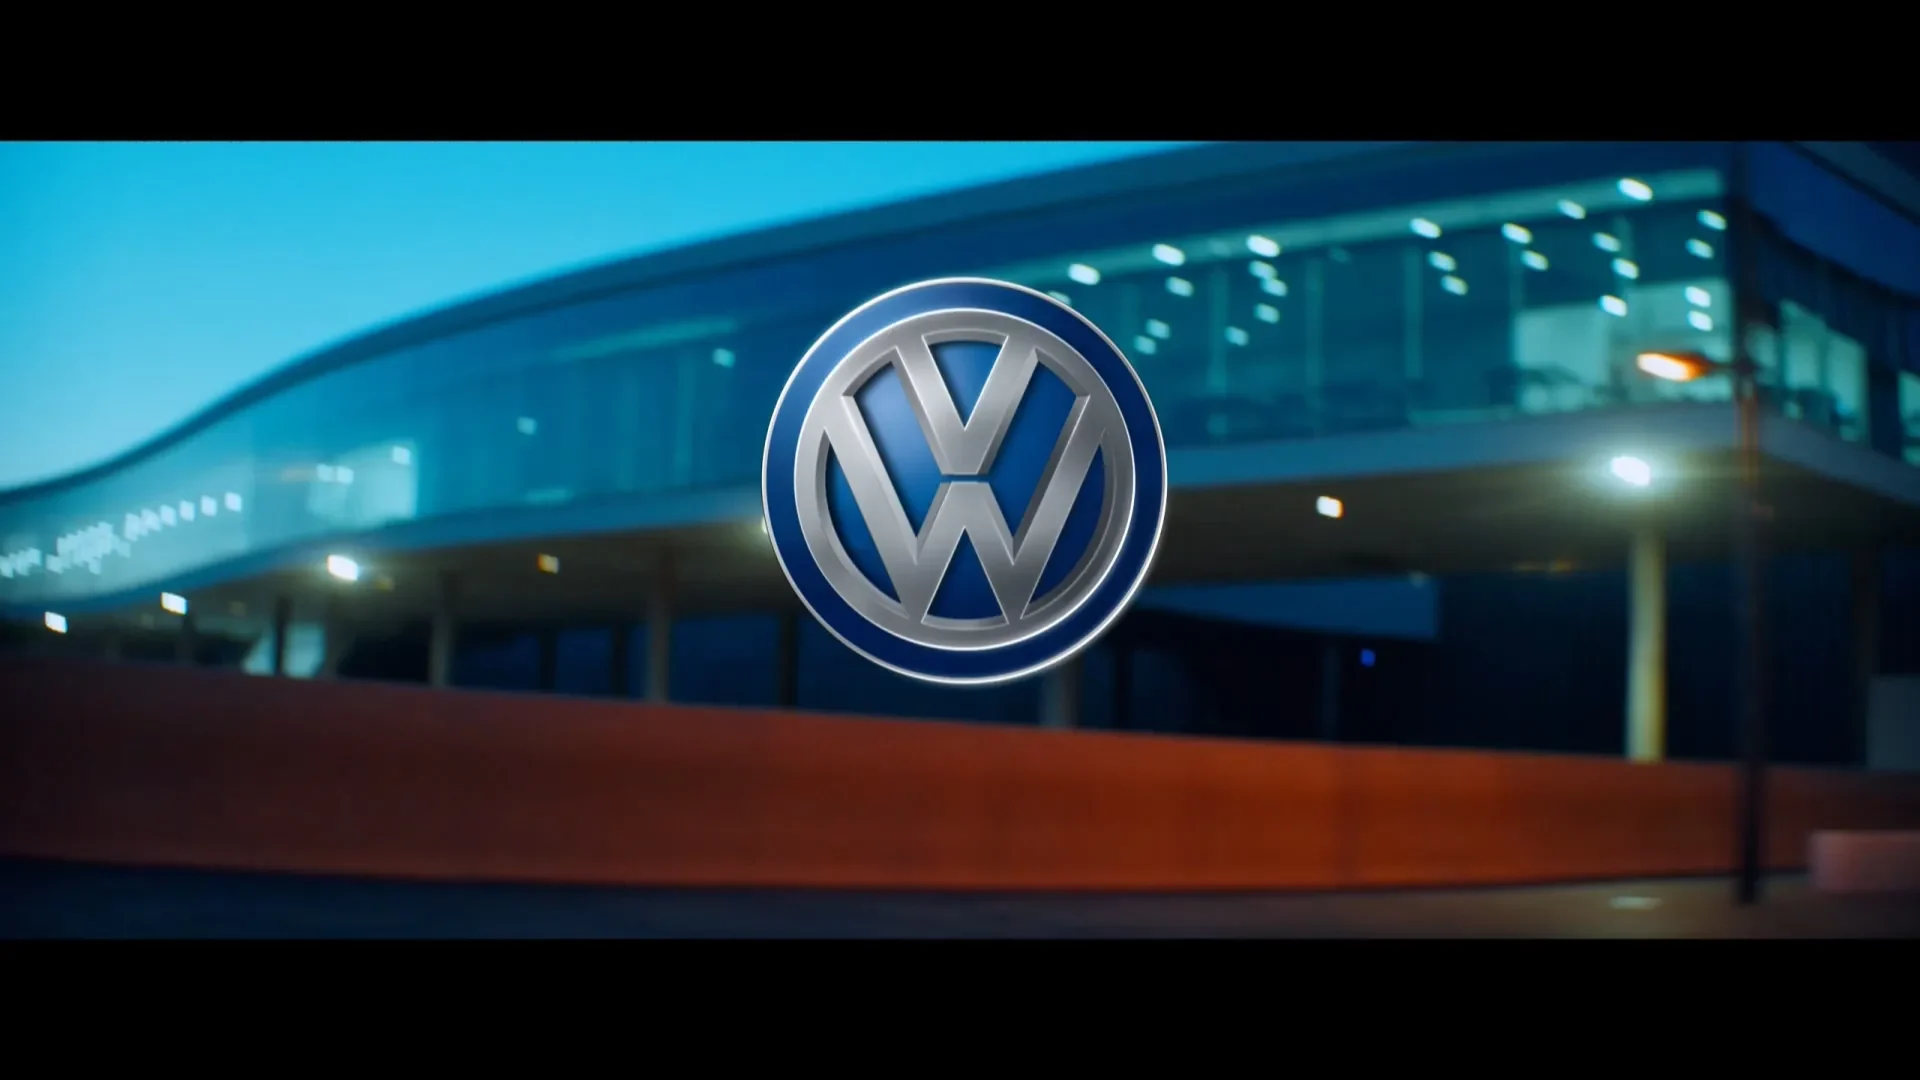 Volkswagen - IQ Drive Styleframe